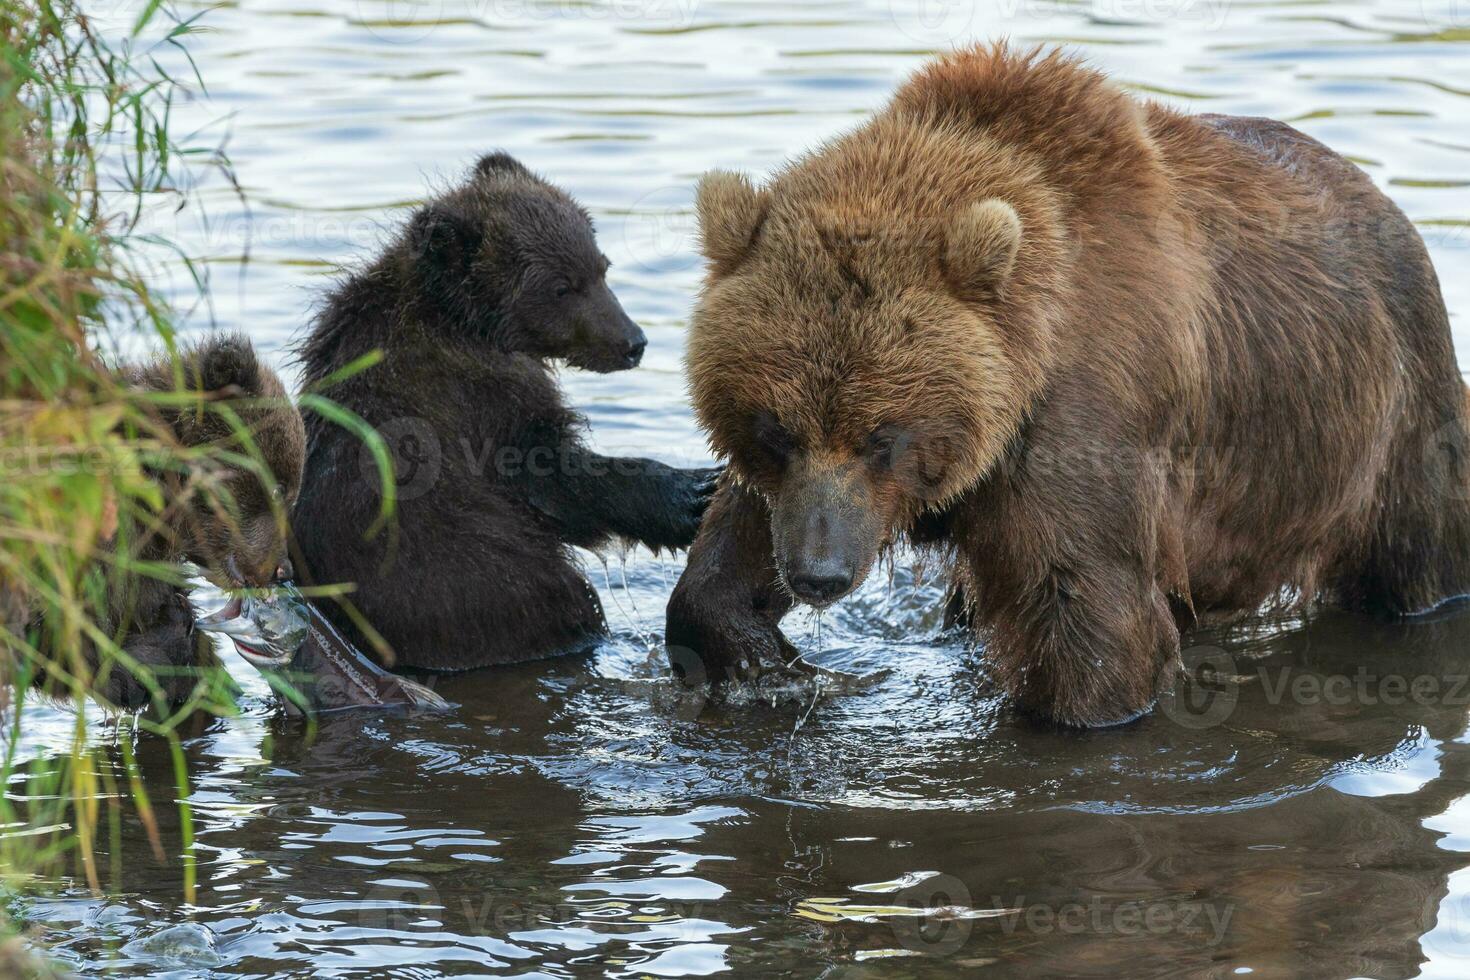 mãe Kamchatka Castanho Urso com dois Urso filhotes pescaria vermelho salmão peixe durante peixe desova dentro rio foto